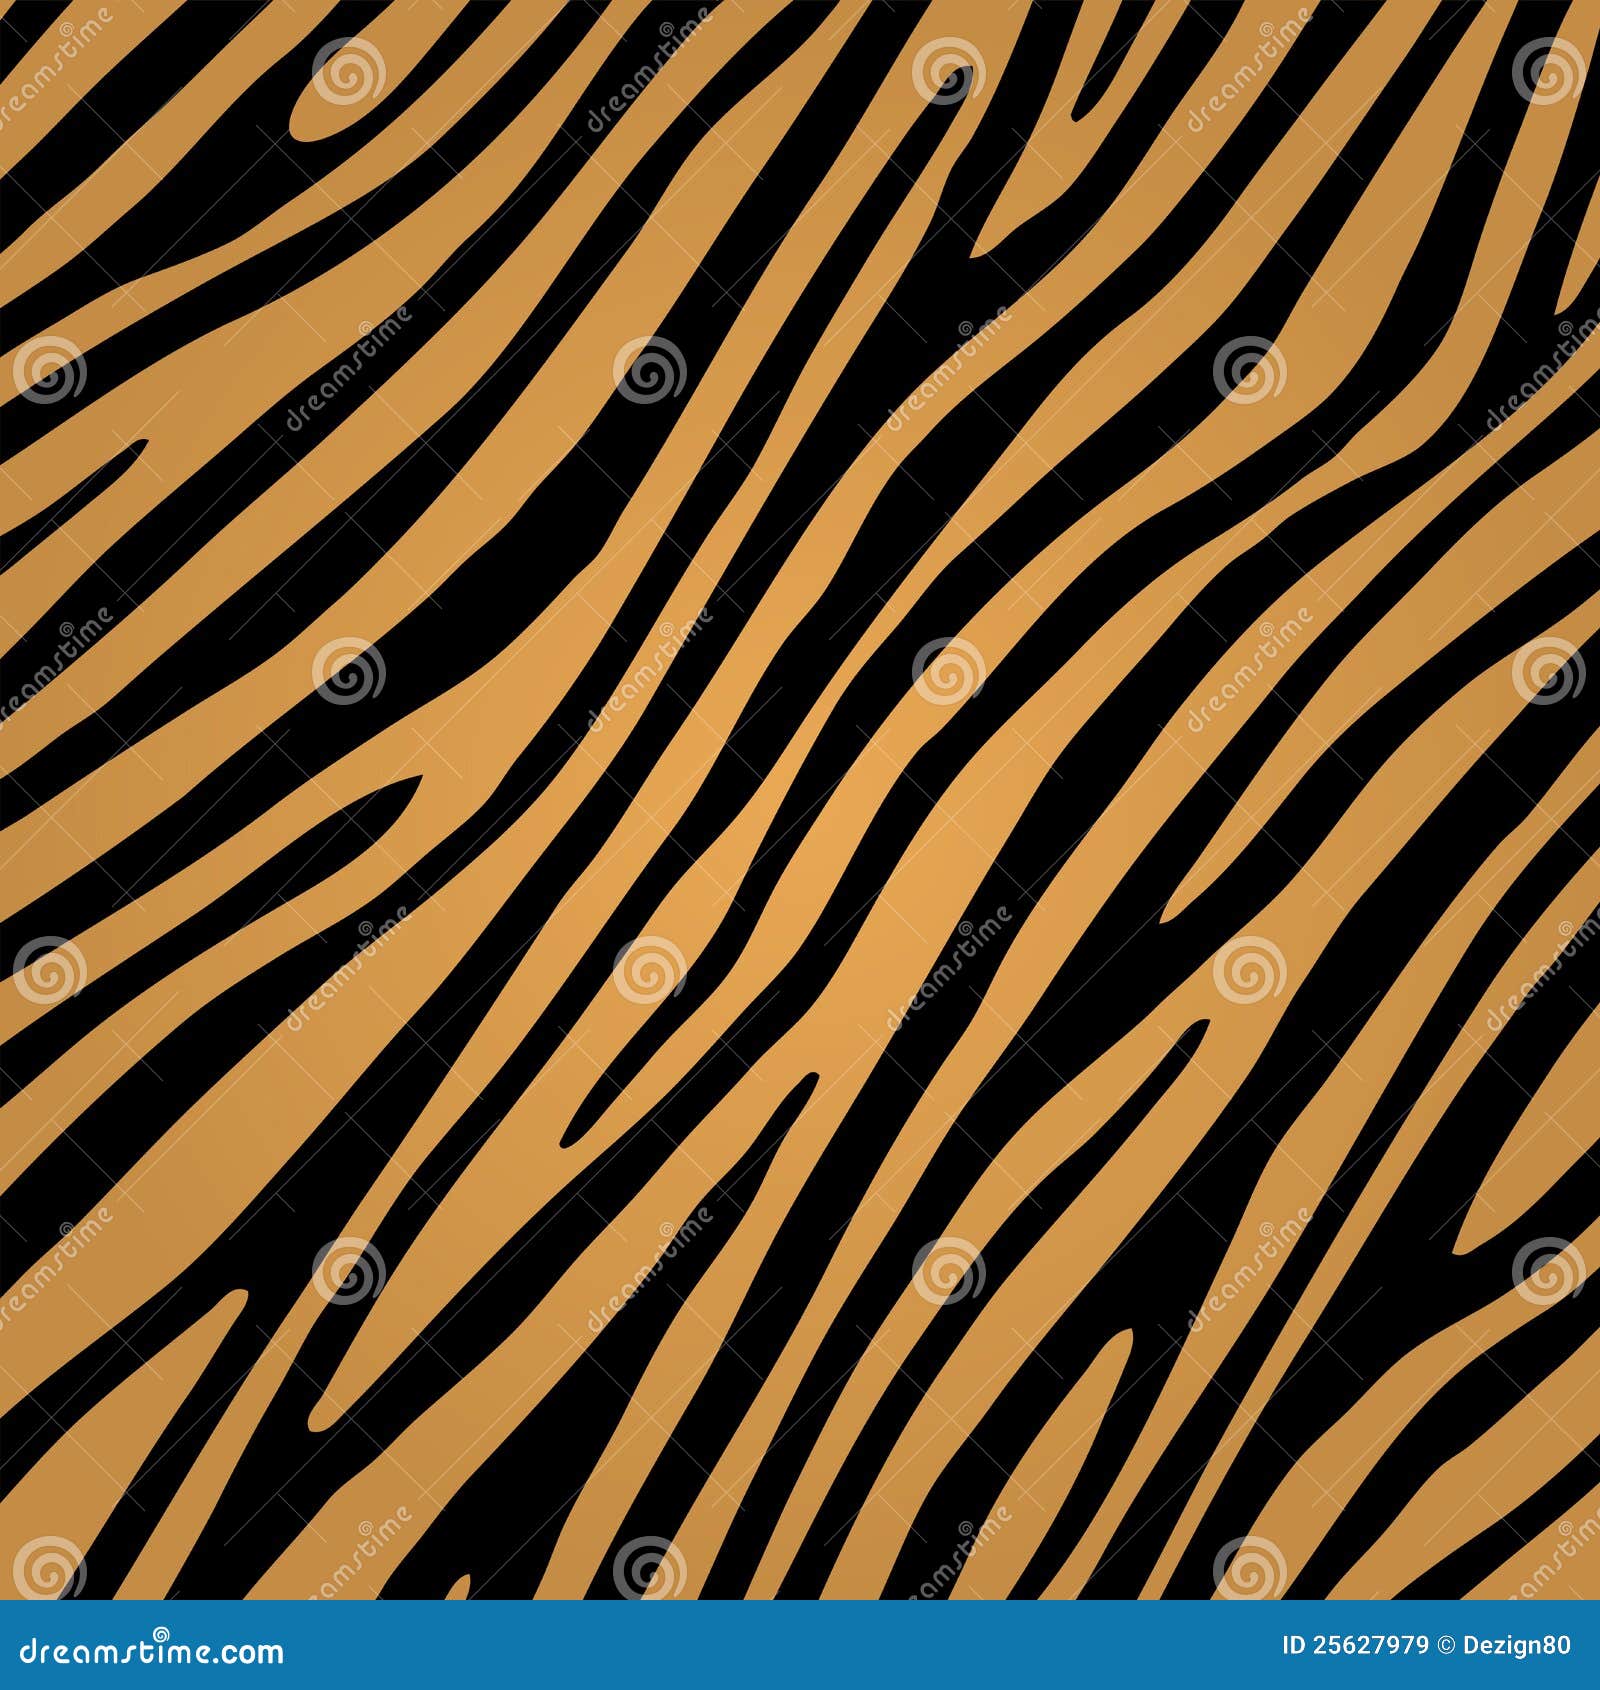 Tiger skin pattern stock vector. Illustration of pattern - 25627979